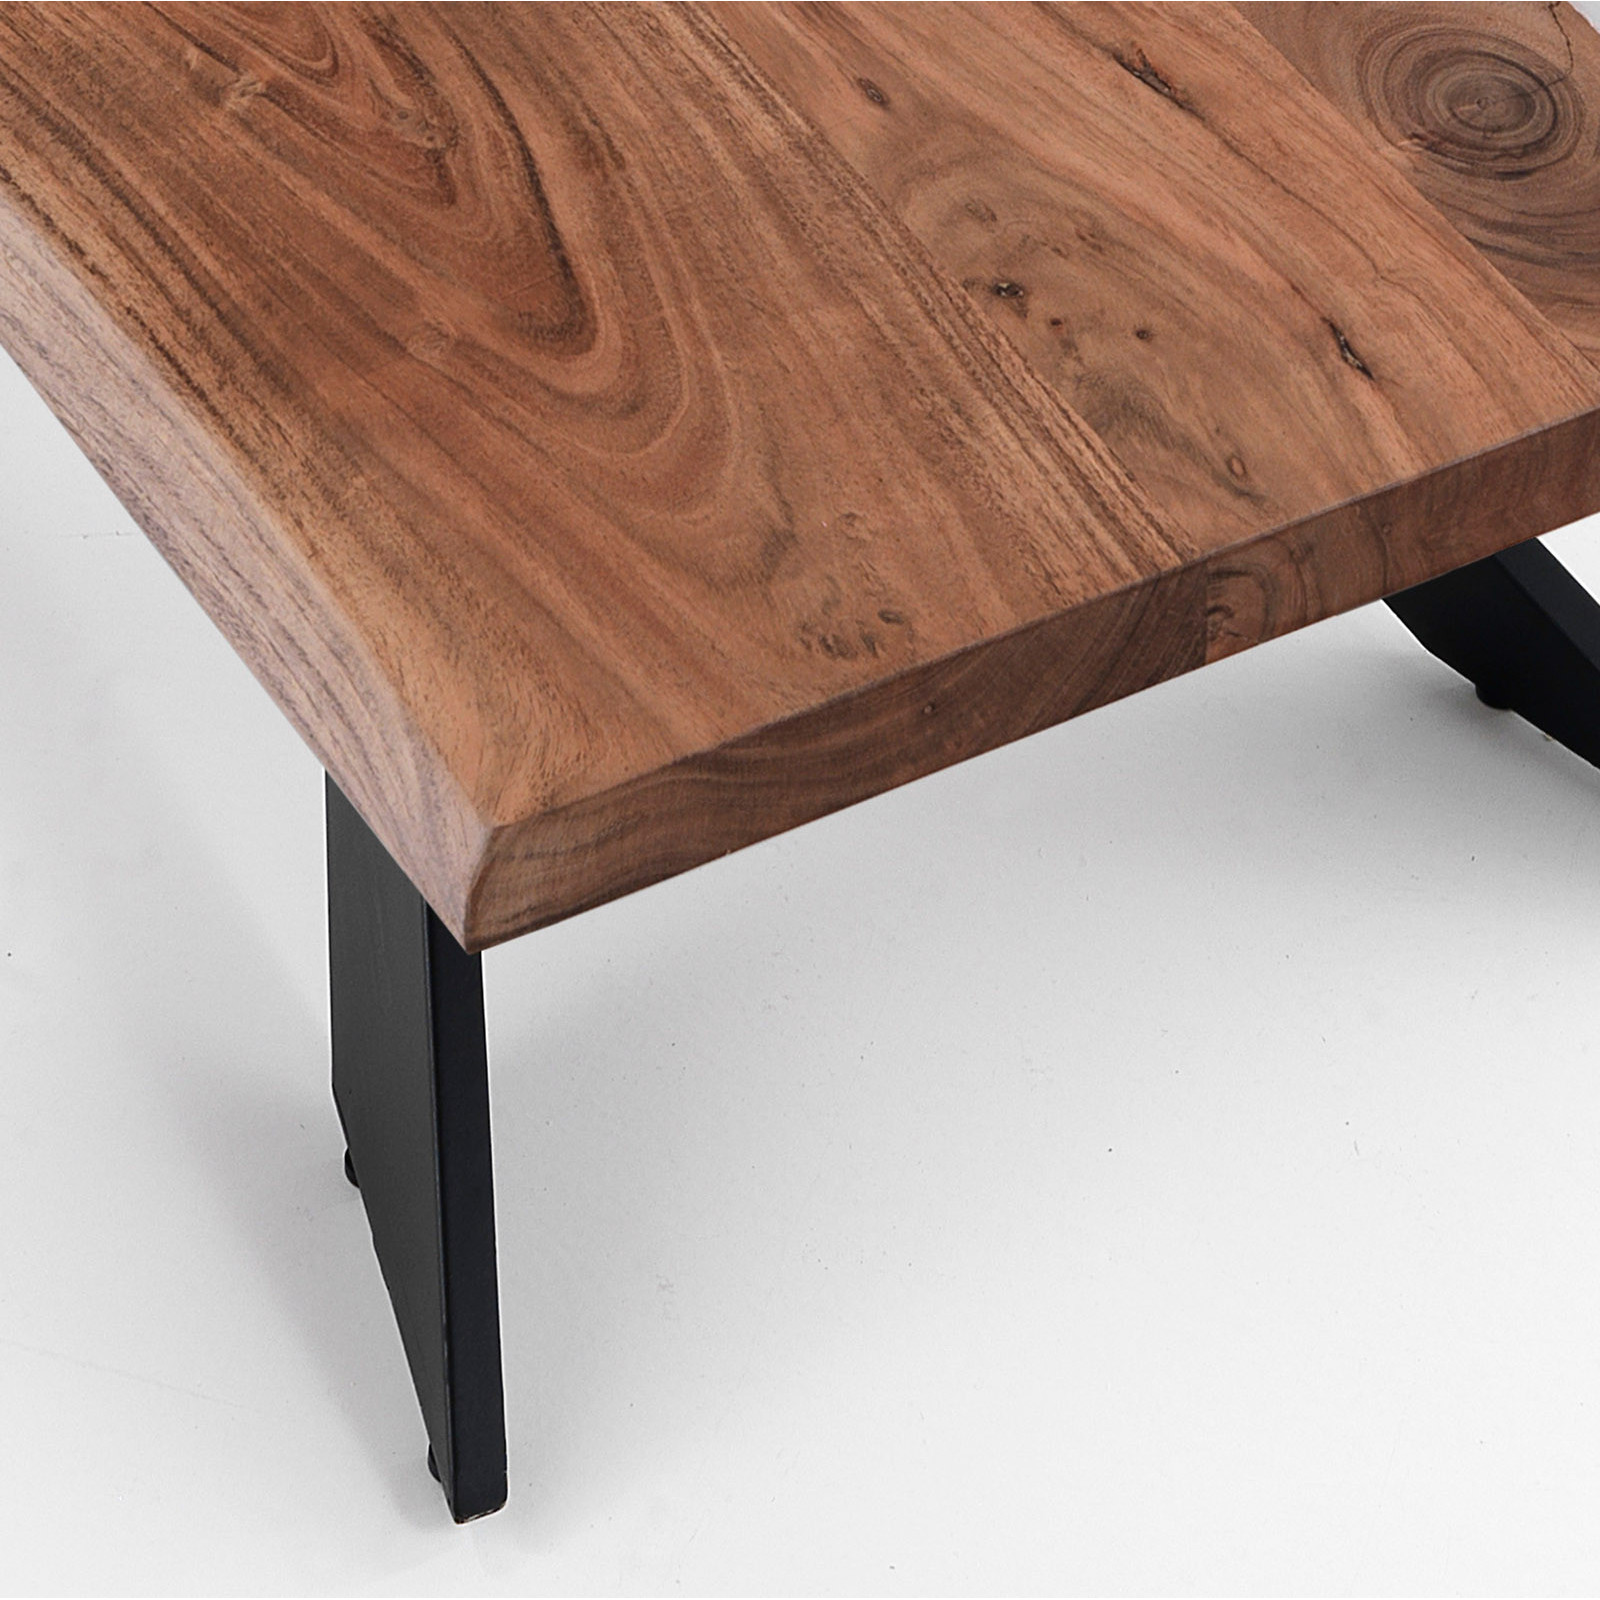 Tavoli allungabili in legno massello. Su misura e personalizzati.